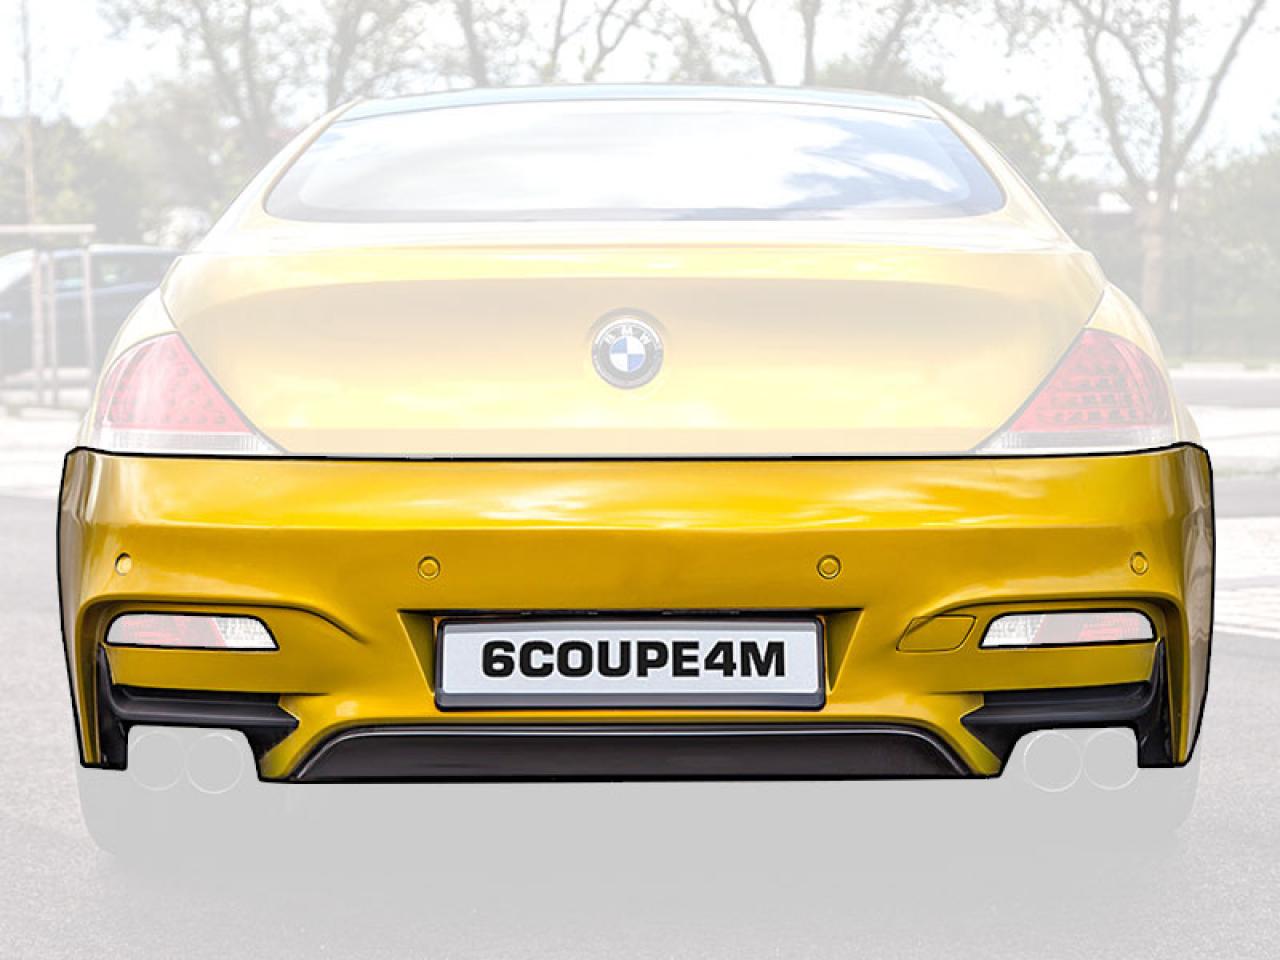 6COUPE4M Rear Bumper for BMW 6-Series E63/E64